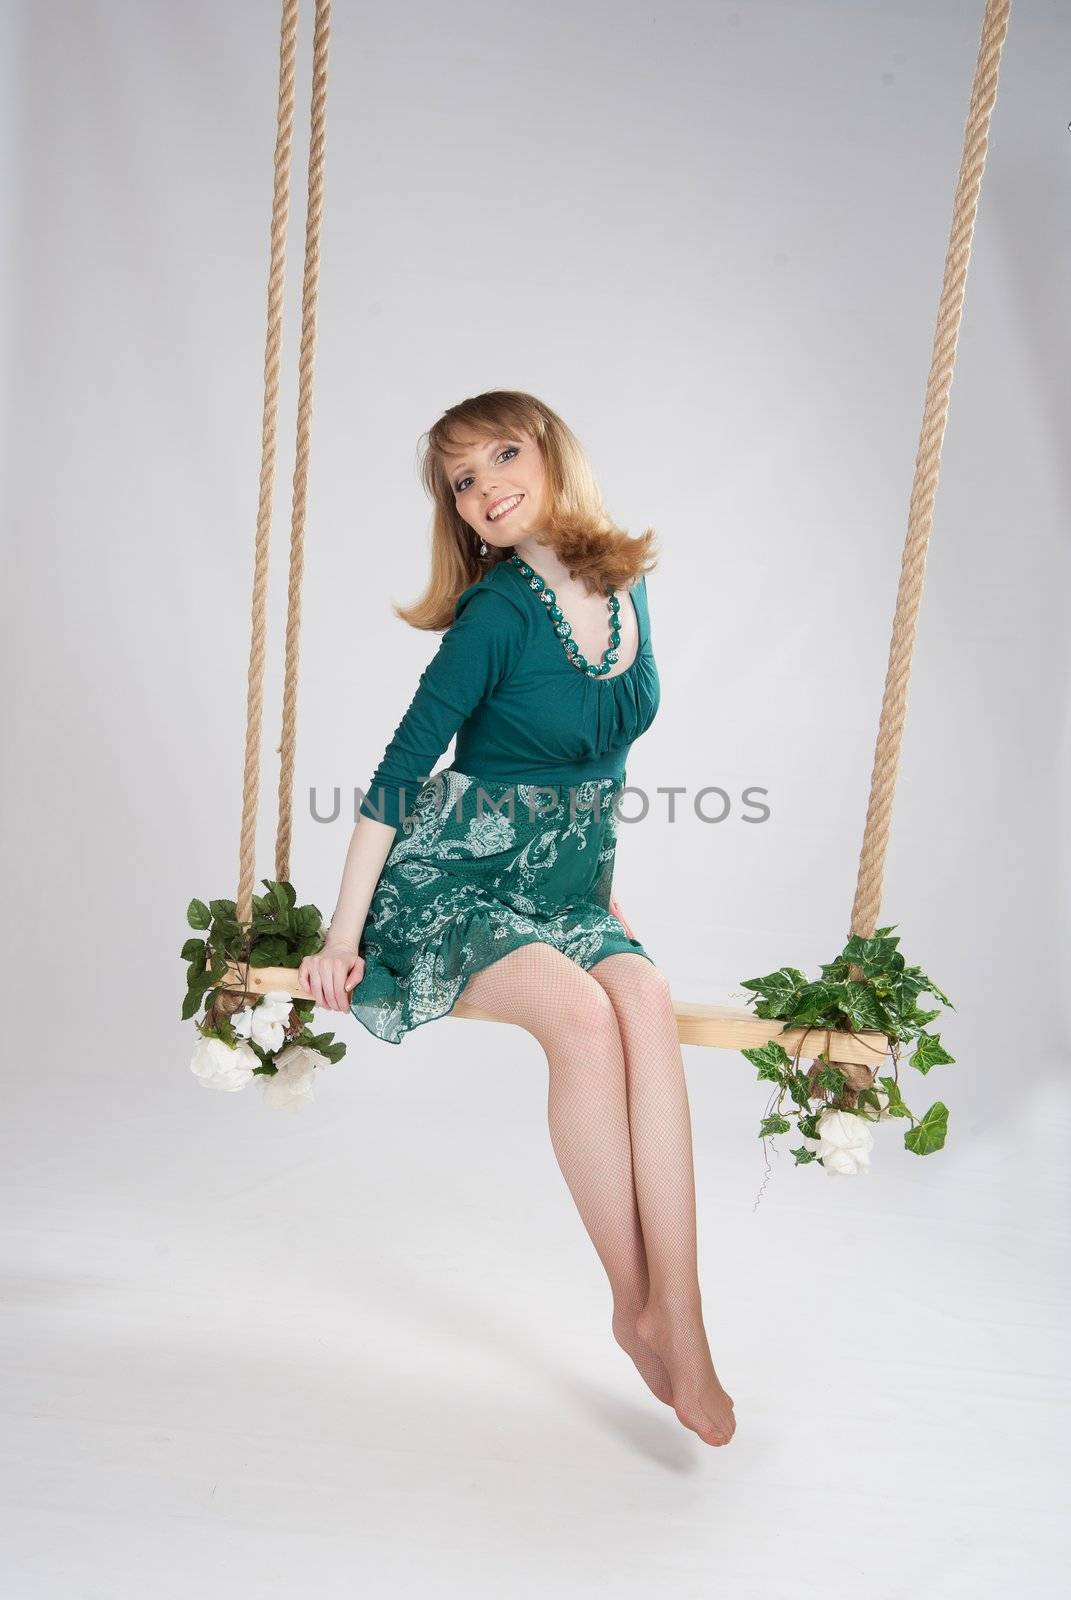 beautiful woman in a green dress on a swing